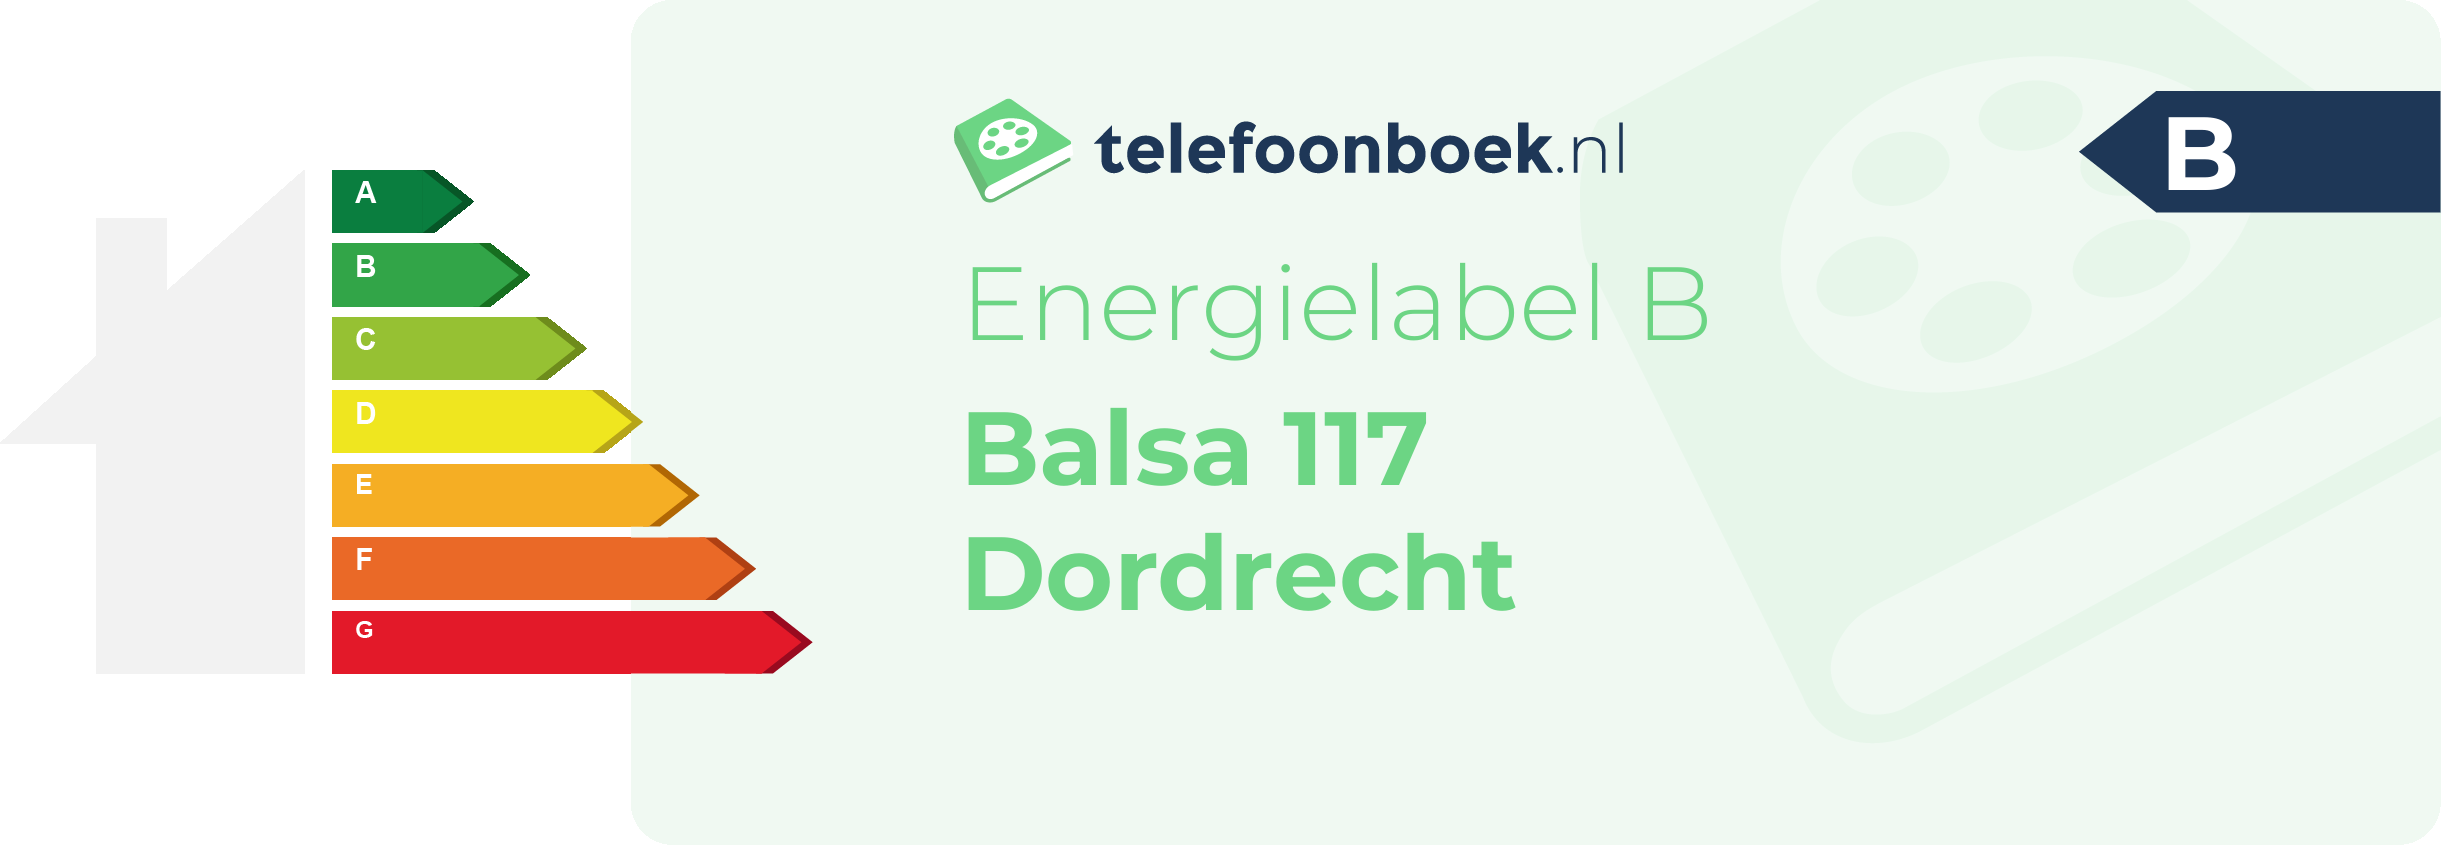 Energielabel Balsa 117 Dordrecht